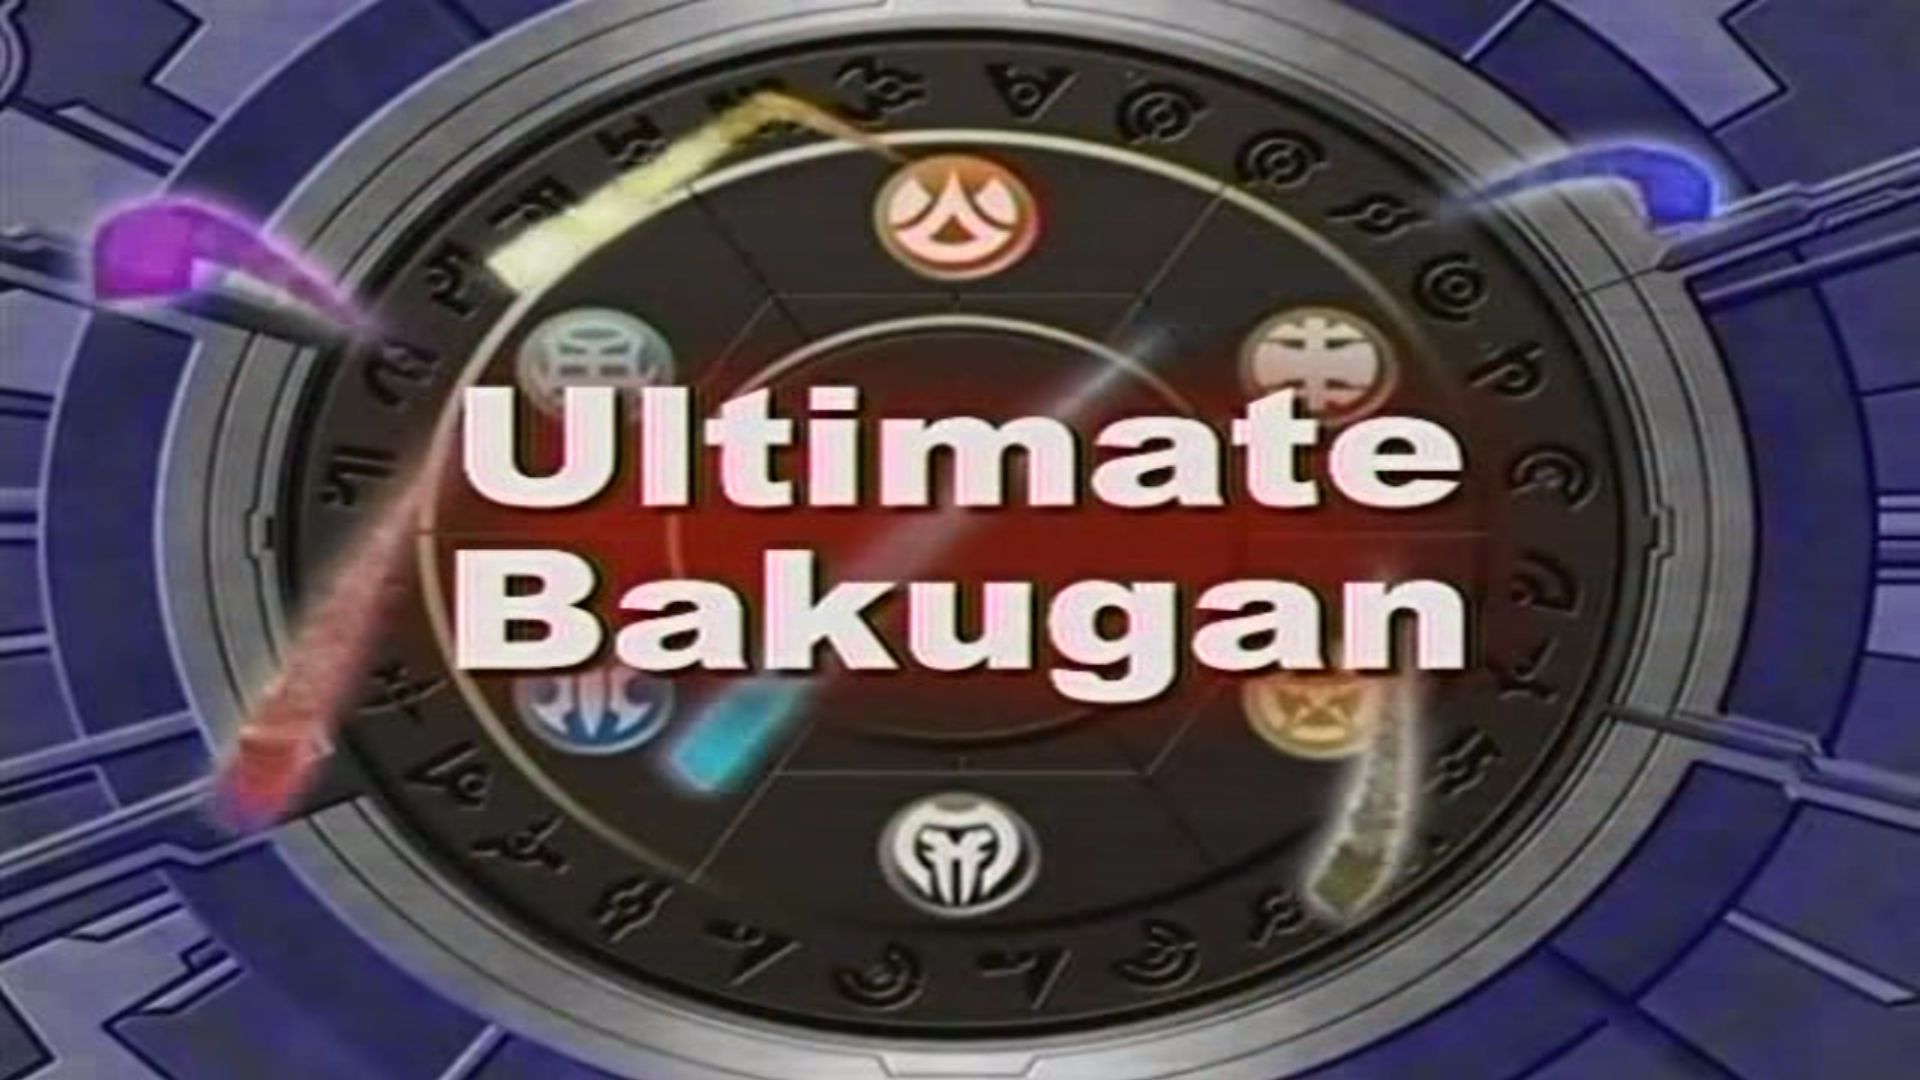 List of Bakugan Battle Brawlers DVDs, Bakugan Wiki, Fandom